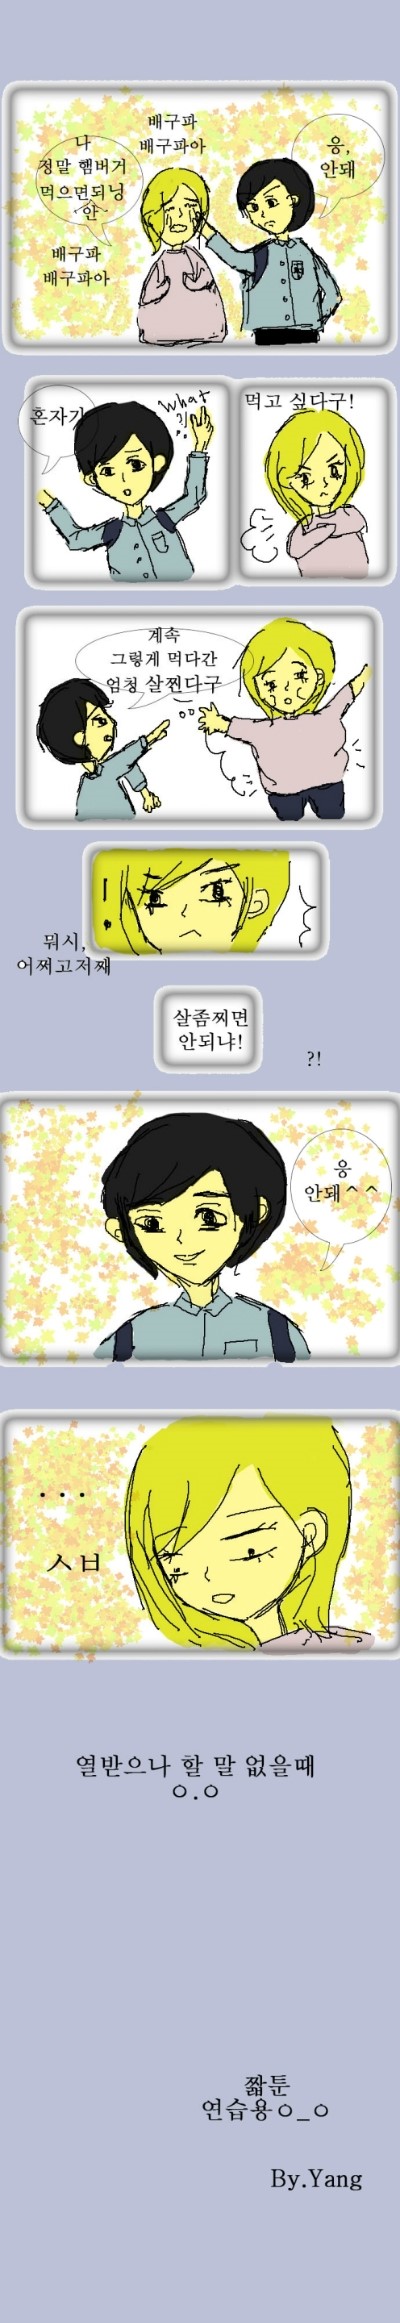 양툰&웹툰)) 제2화 - 안돼^^(연습용)